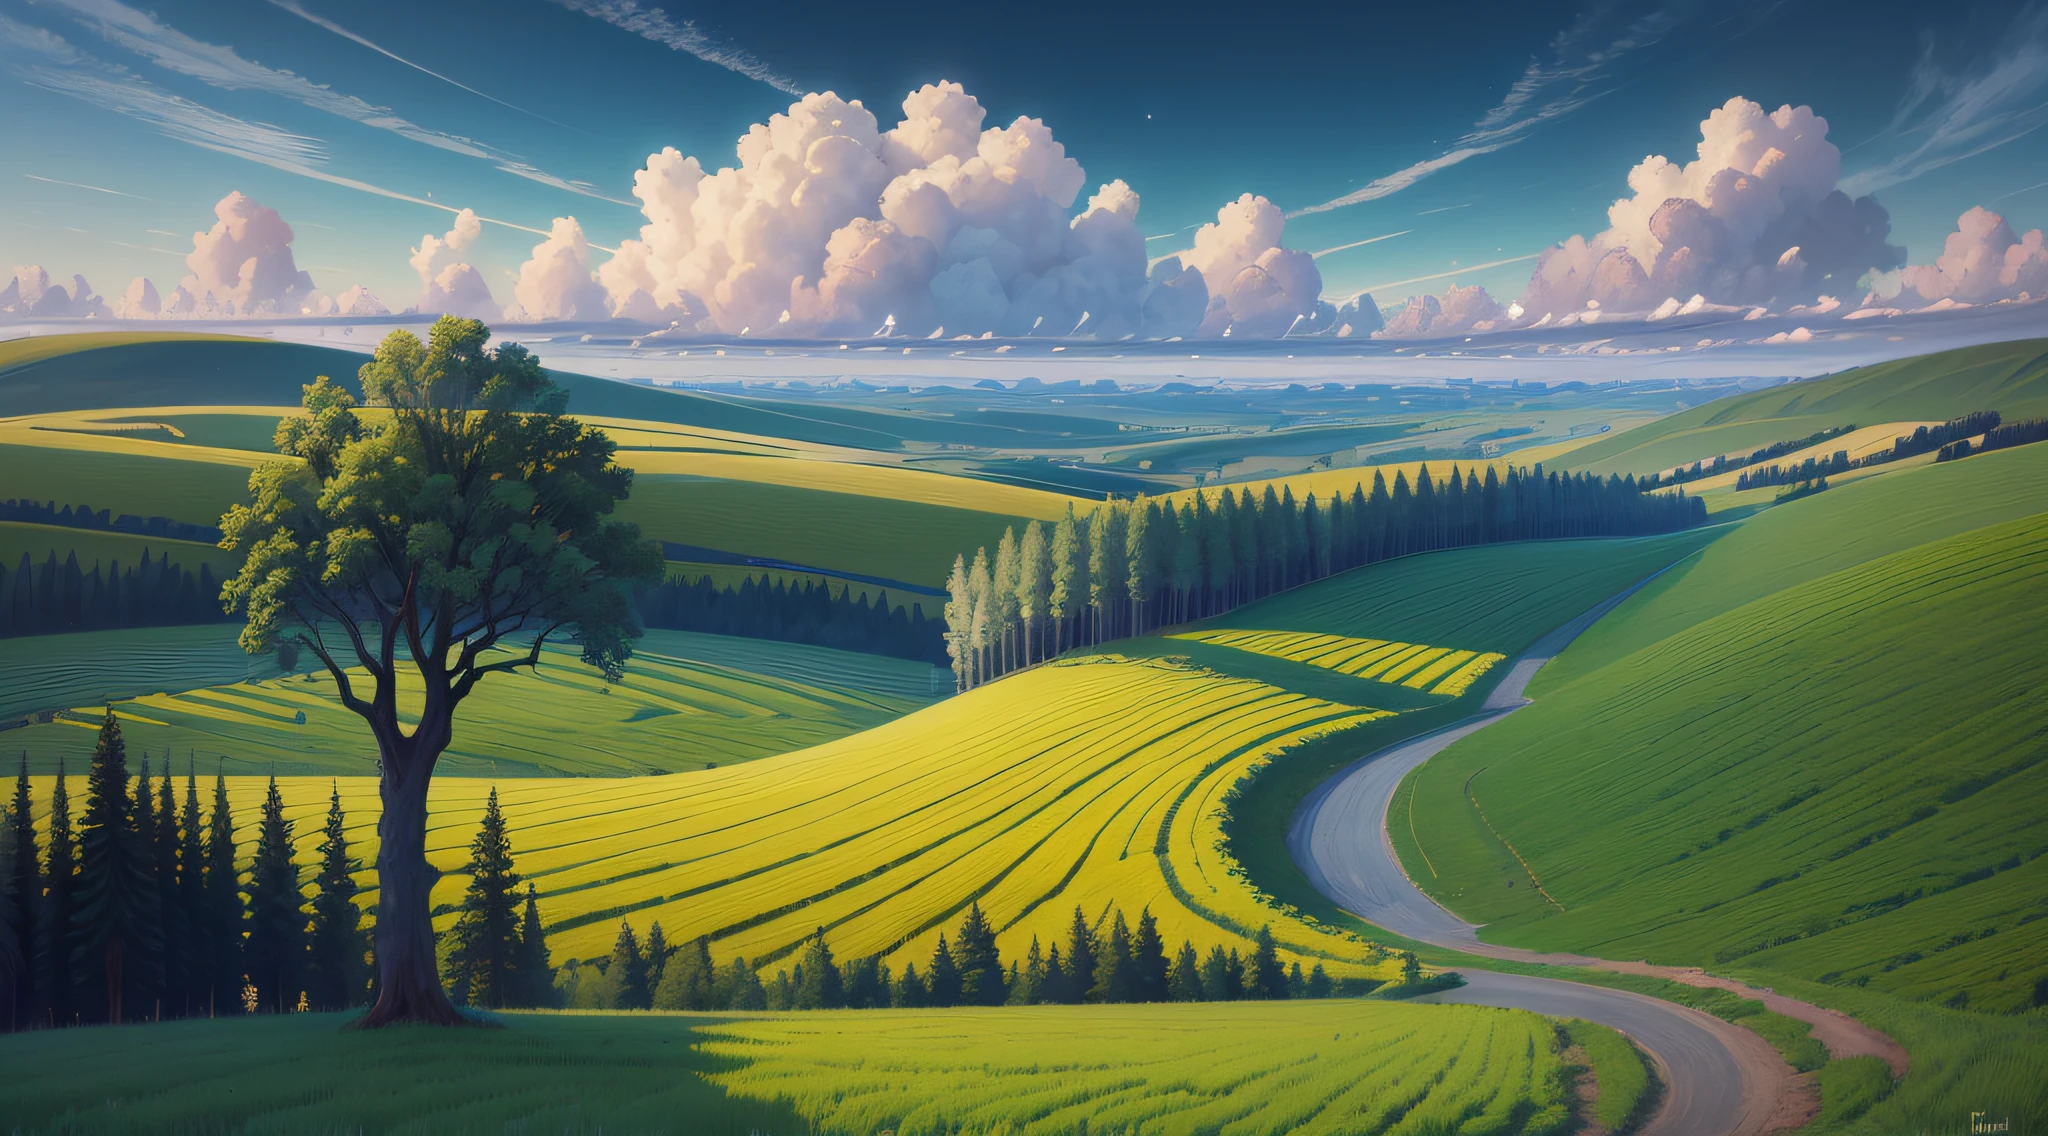 いくつかの木と空のある野原の絵, イゴール・キリルク, 美しい油絵マット, inspired by イゴール・キリルク, シュルレアリスムの風景, 美しい景色, アンドレイ・リャボフチェフ, アンドレイ・エシオノフ, ロシアの風景, グジェゴジ・ルトコフスキー, イリヤ・オストロホフ, シュルレアリスムの風景 --auto --s2